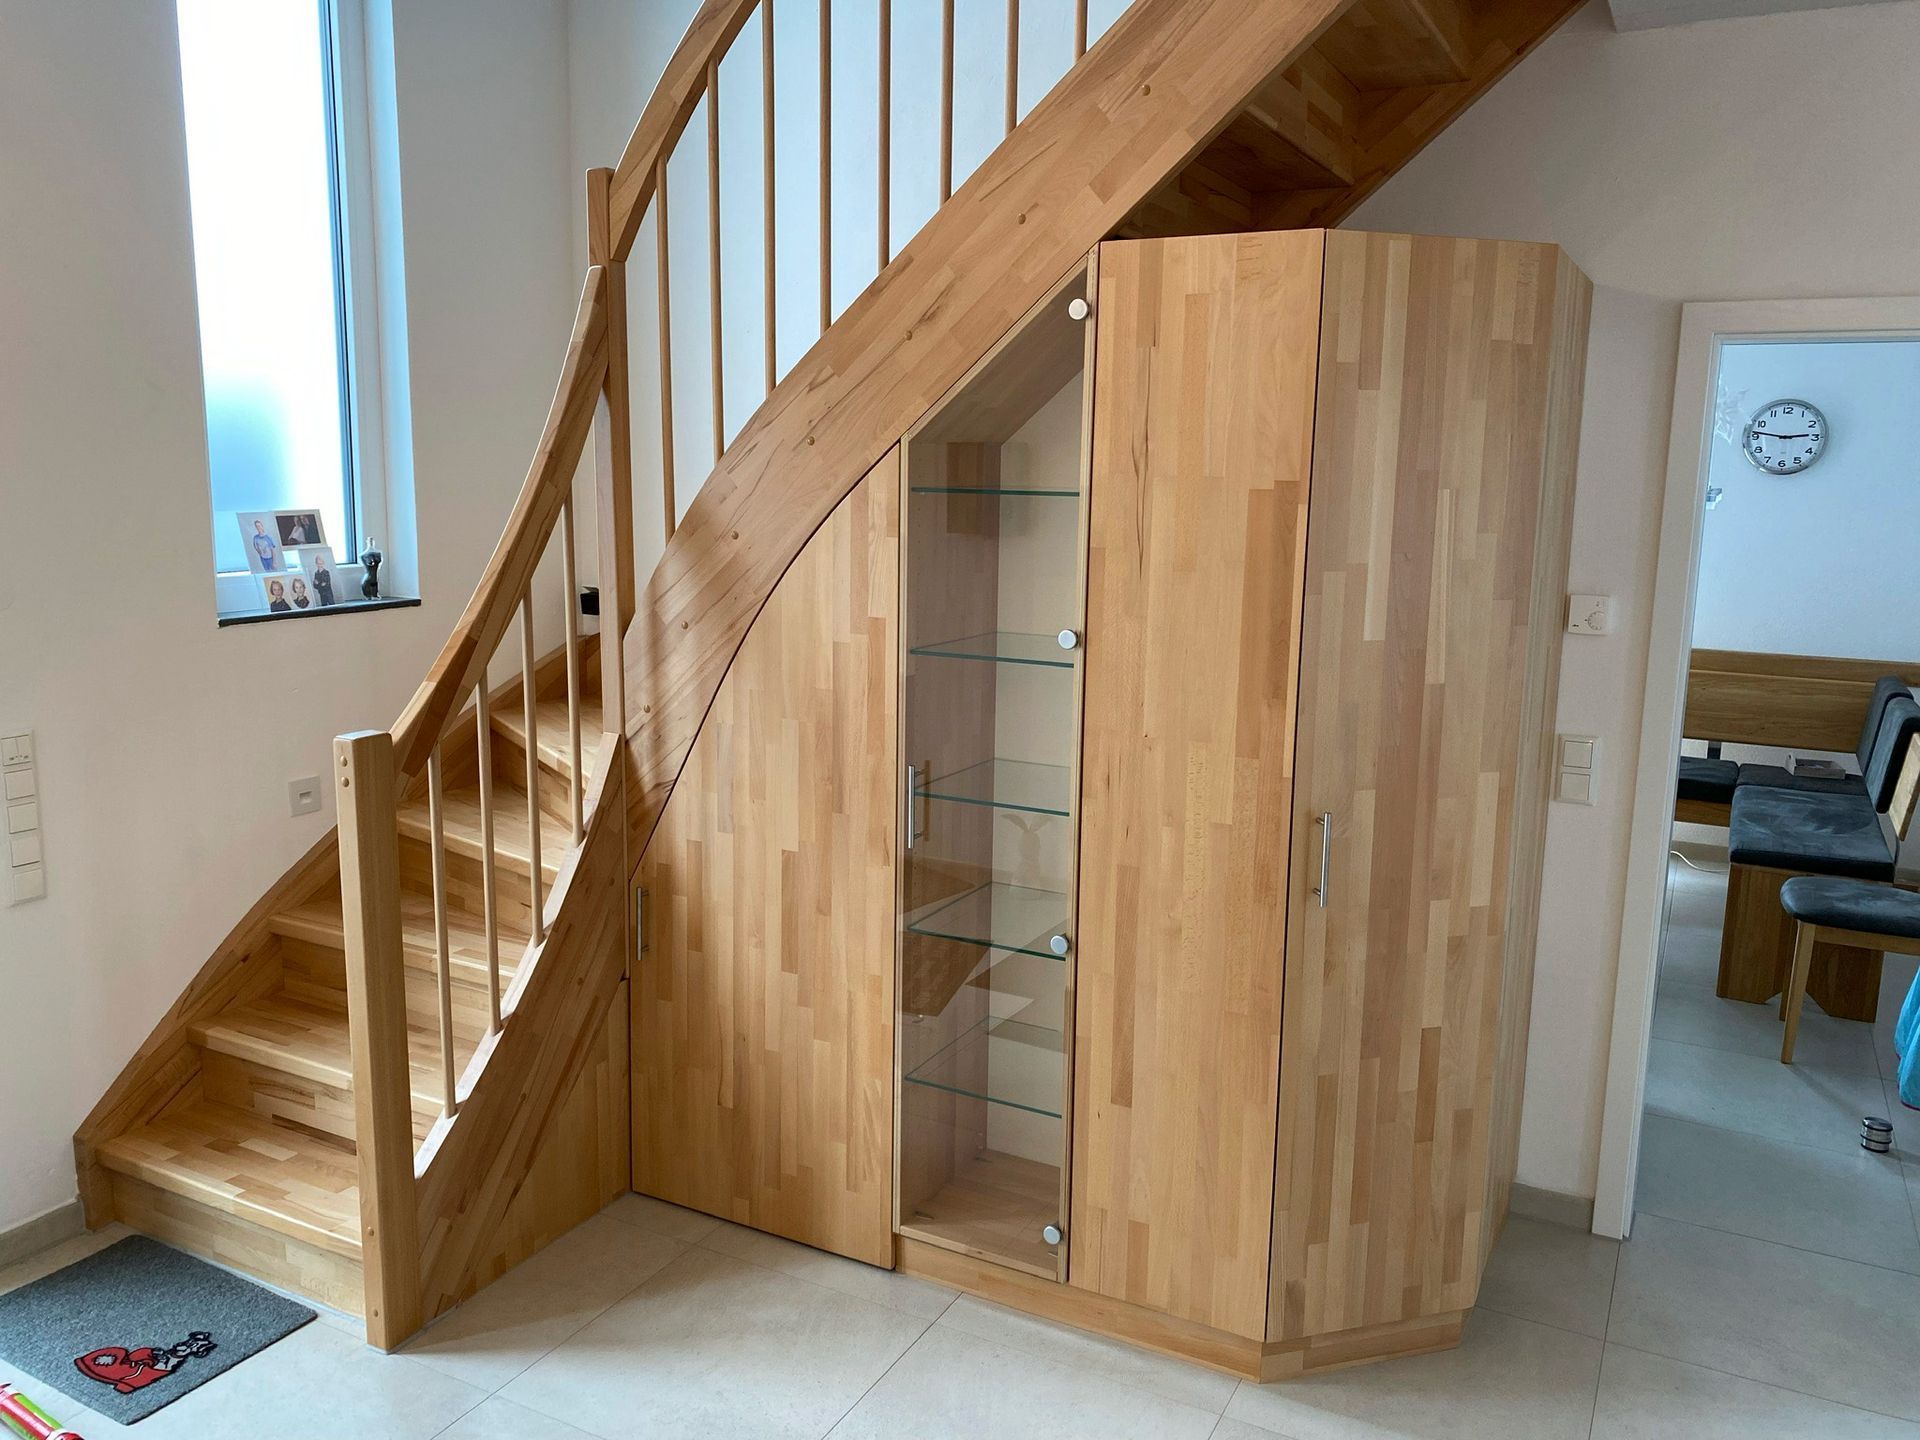 Eine Holztreppe mit einem Holzschrank darunter.